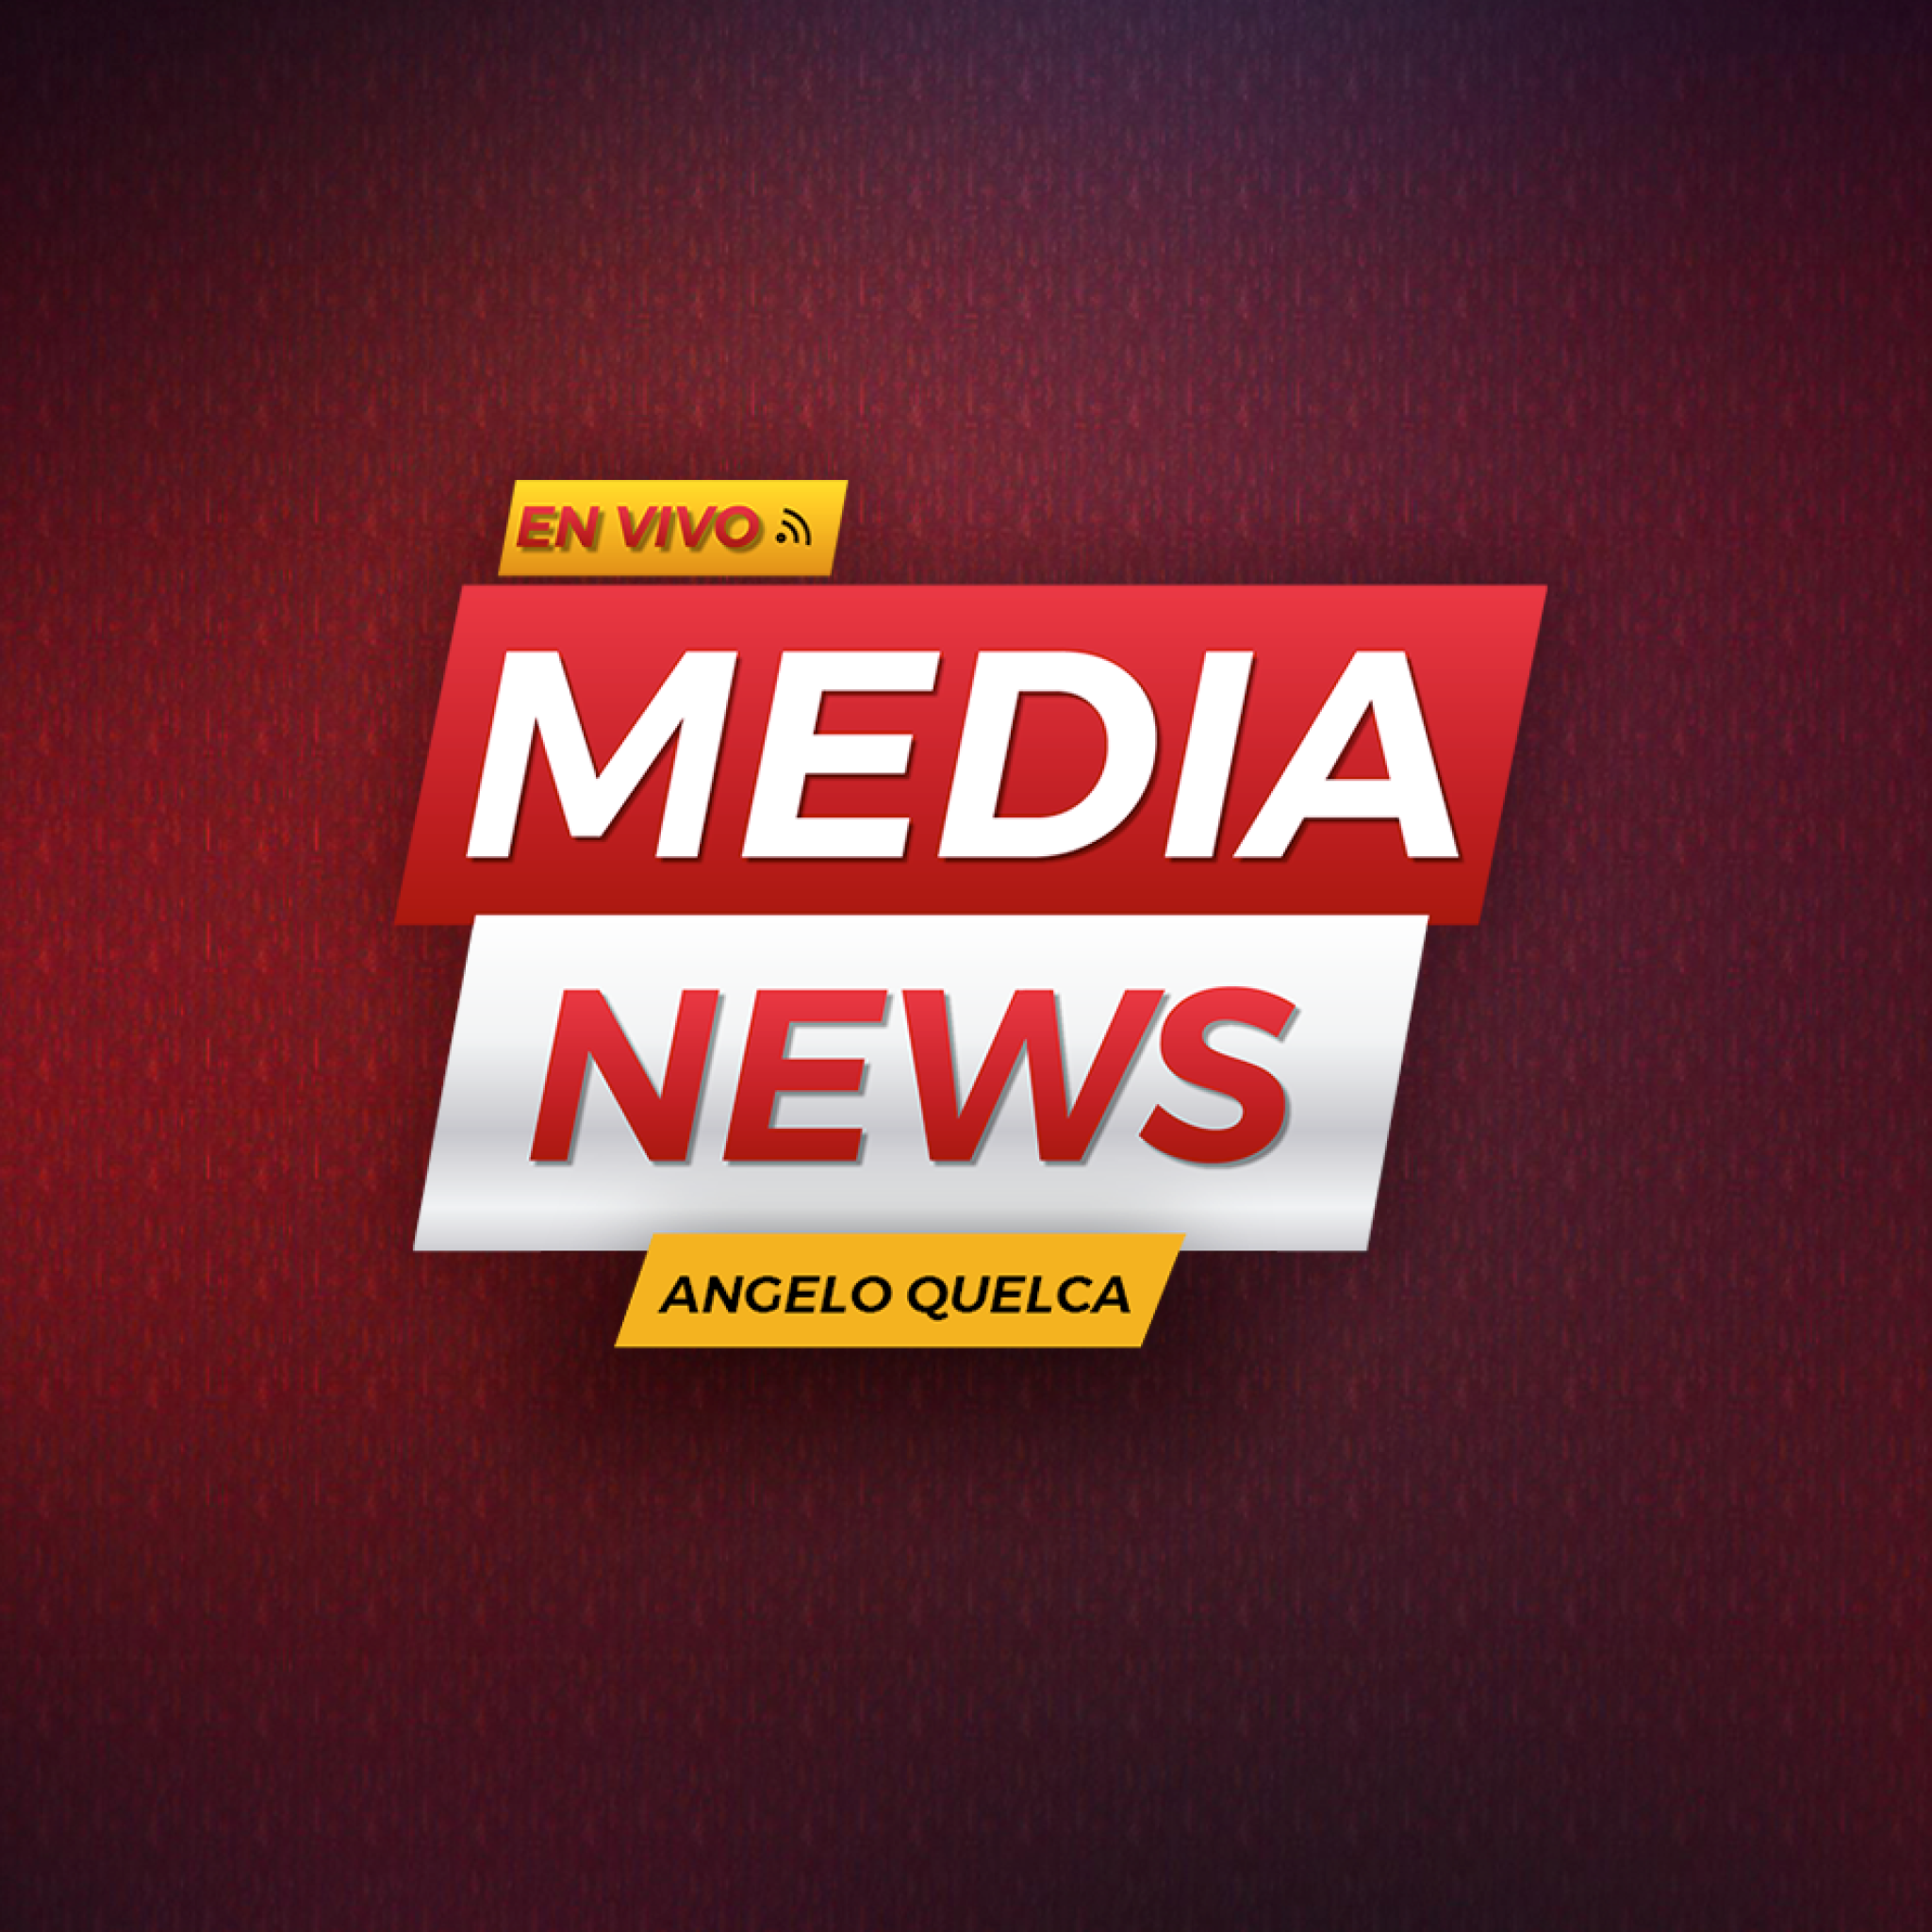 Media news logo